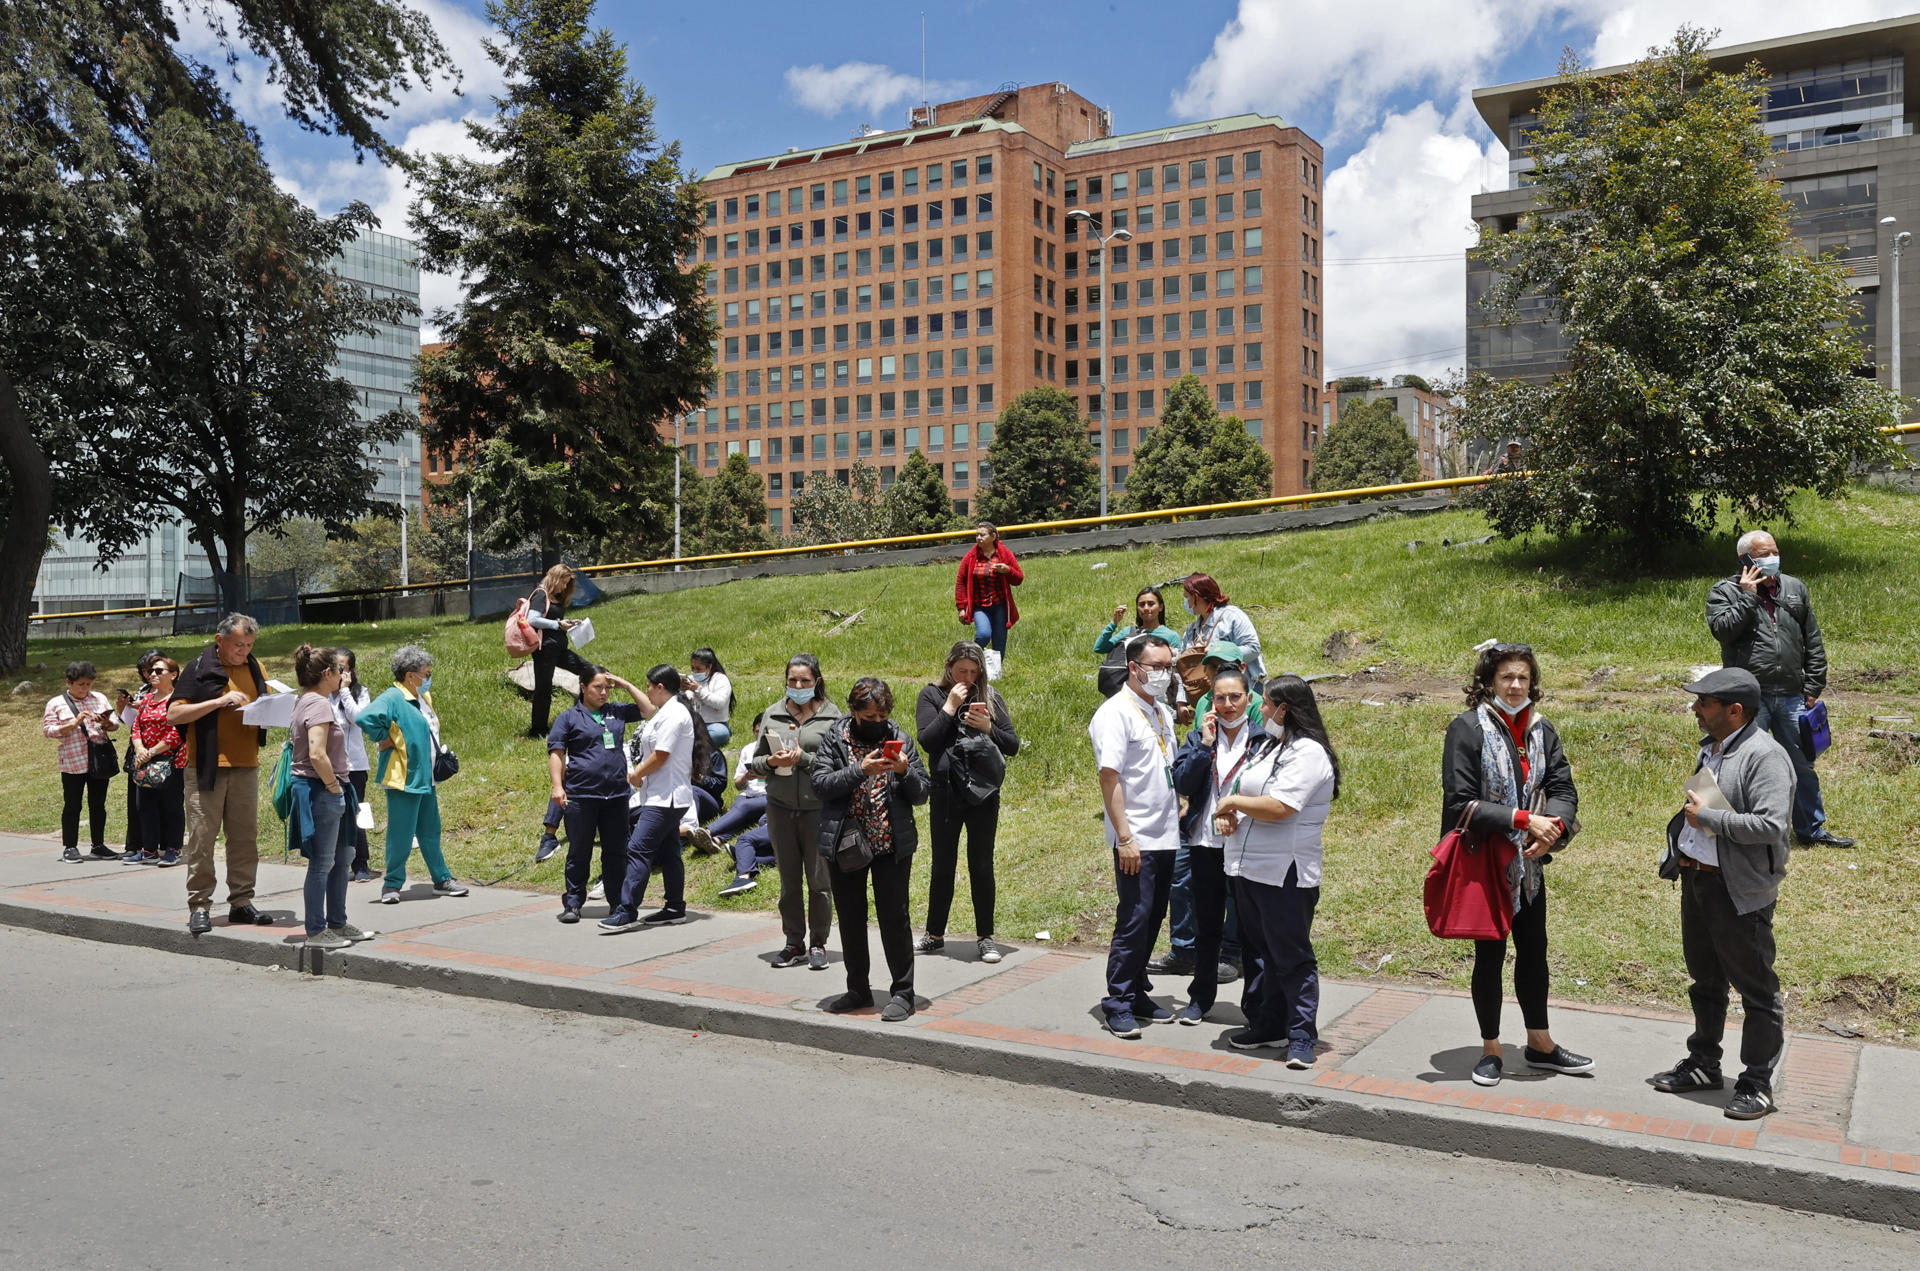 Personas se reúnen afuera de un edificio luego de ser evacuadas debido a un sismo de 6.1 hoy, en Bogotá (Colombia). EFE/Mauricio Dueñas Castañeda